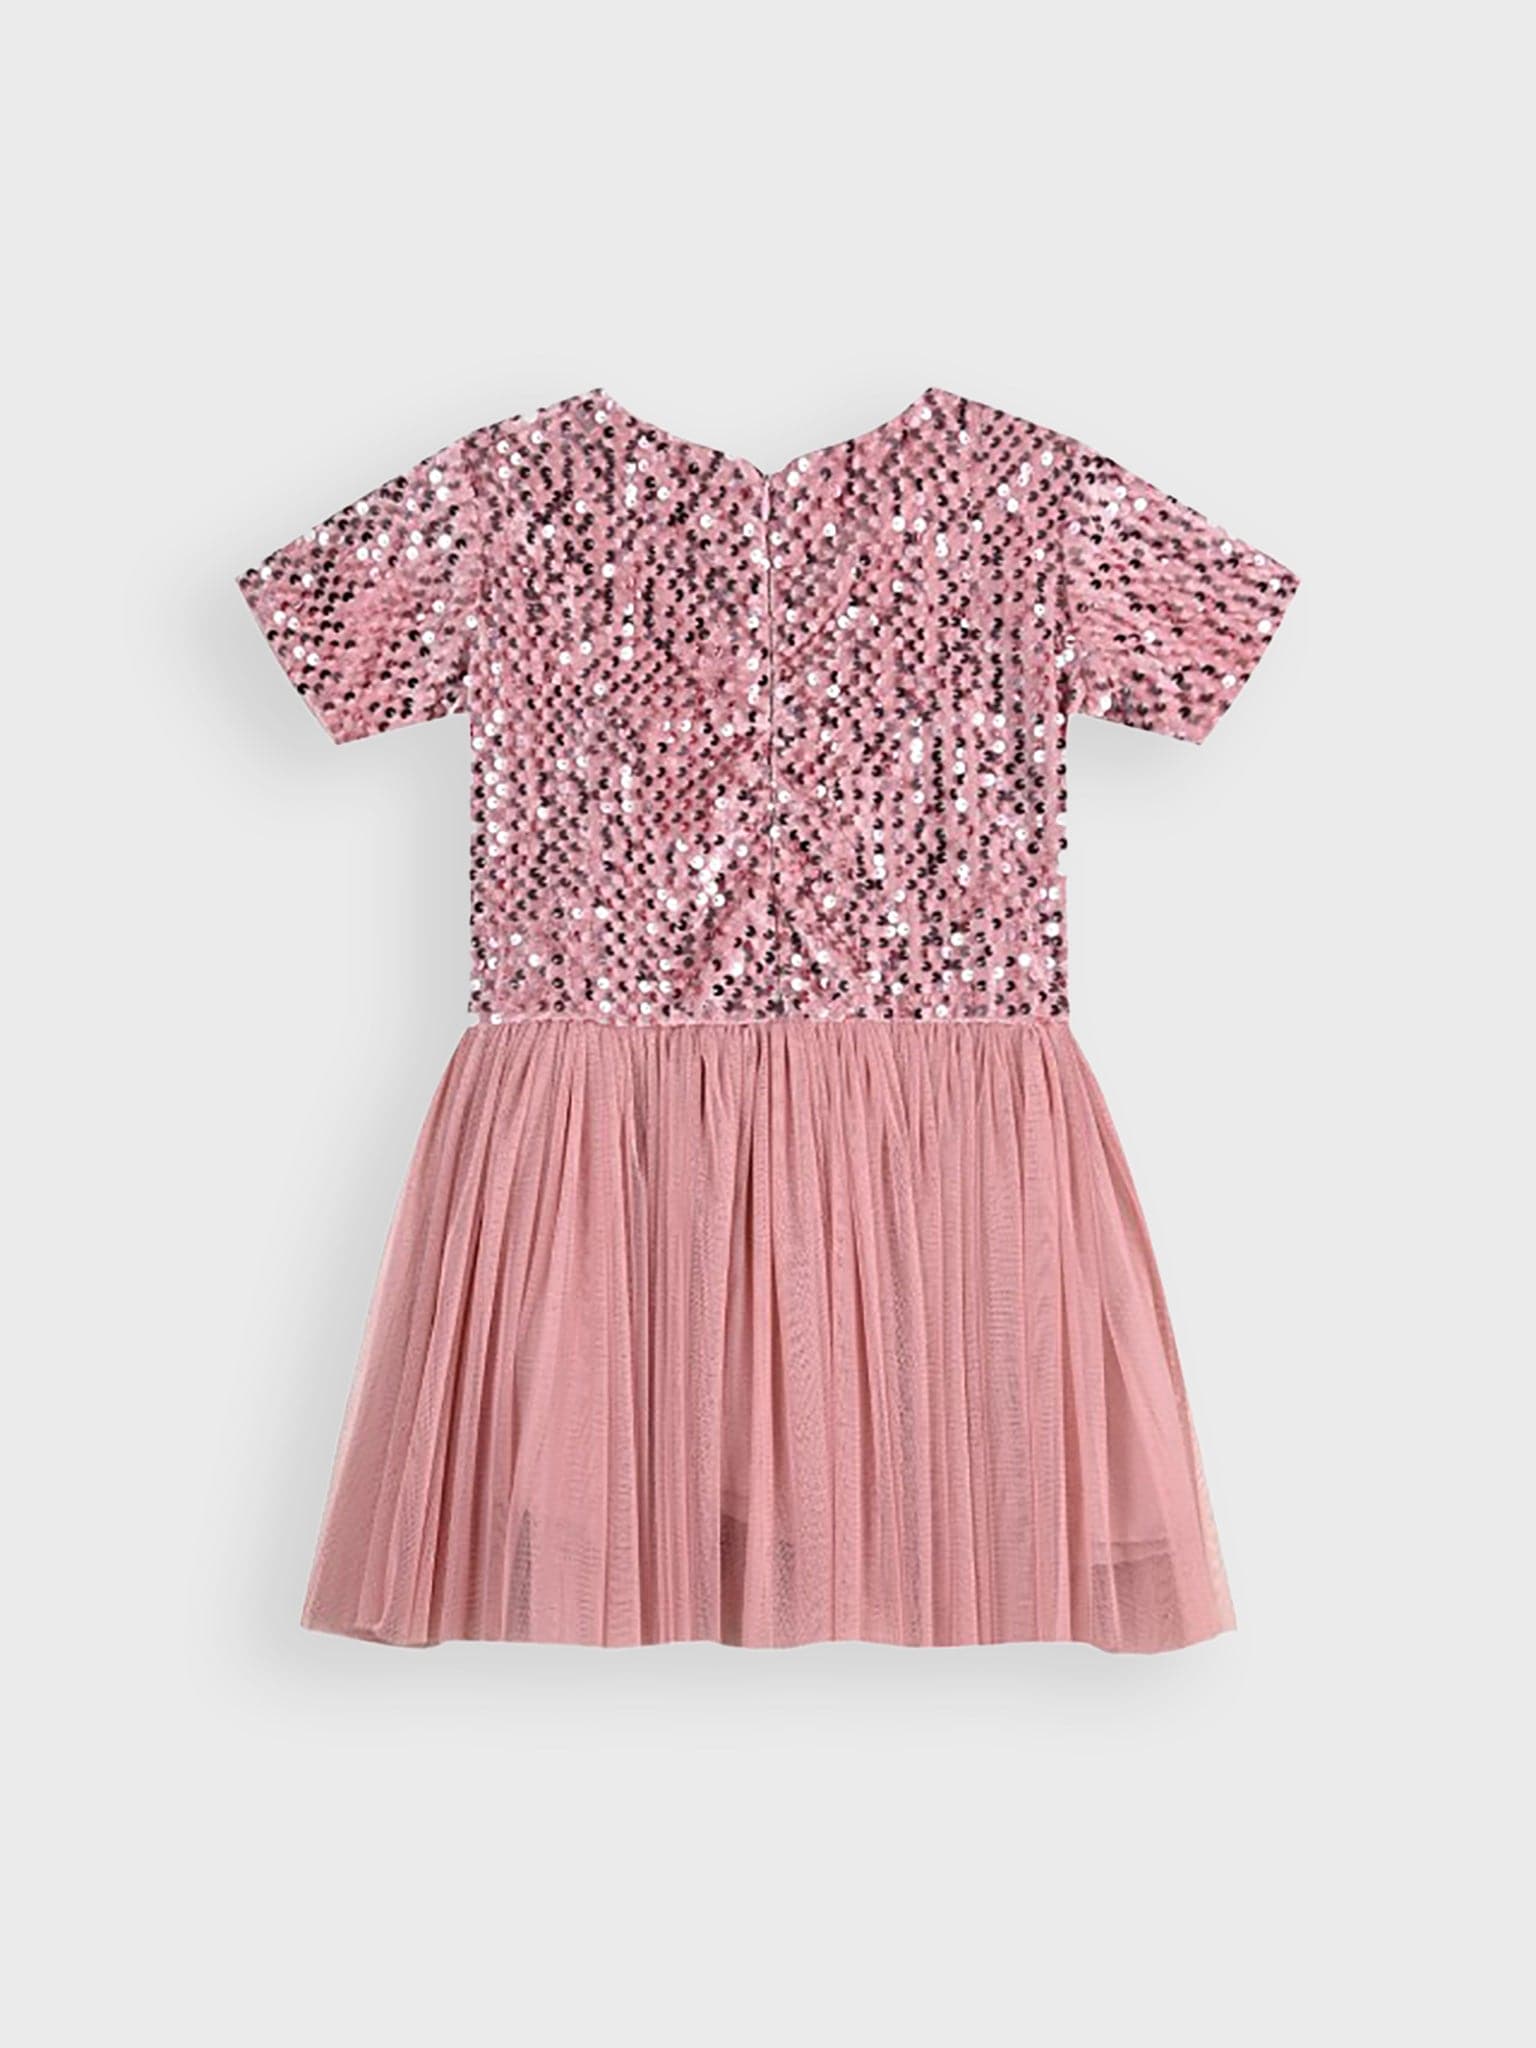 Παιδικό φόρεμα τούλινο με παγιέτα | 45-123371-7